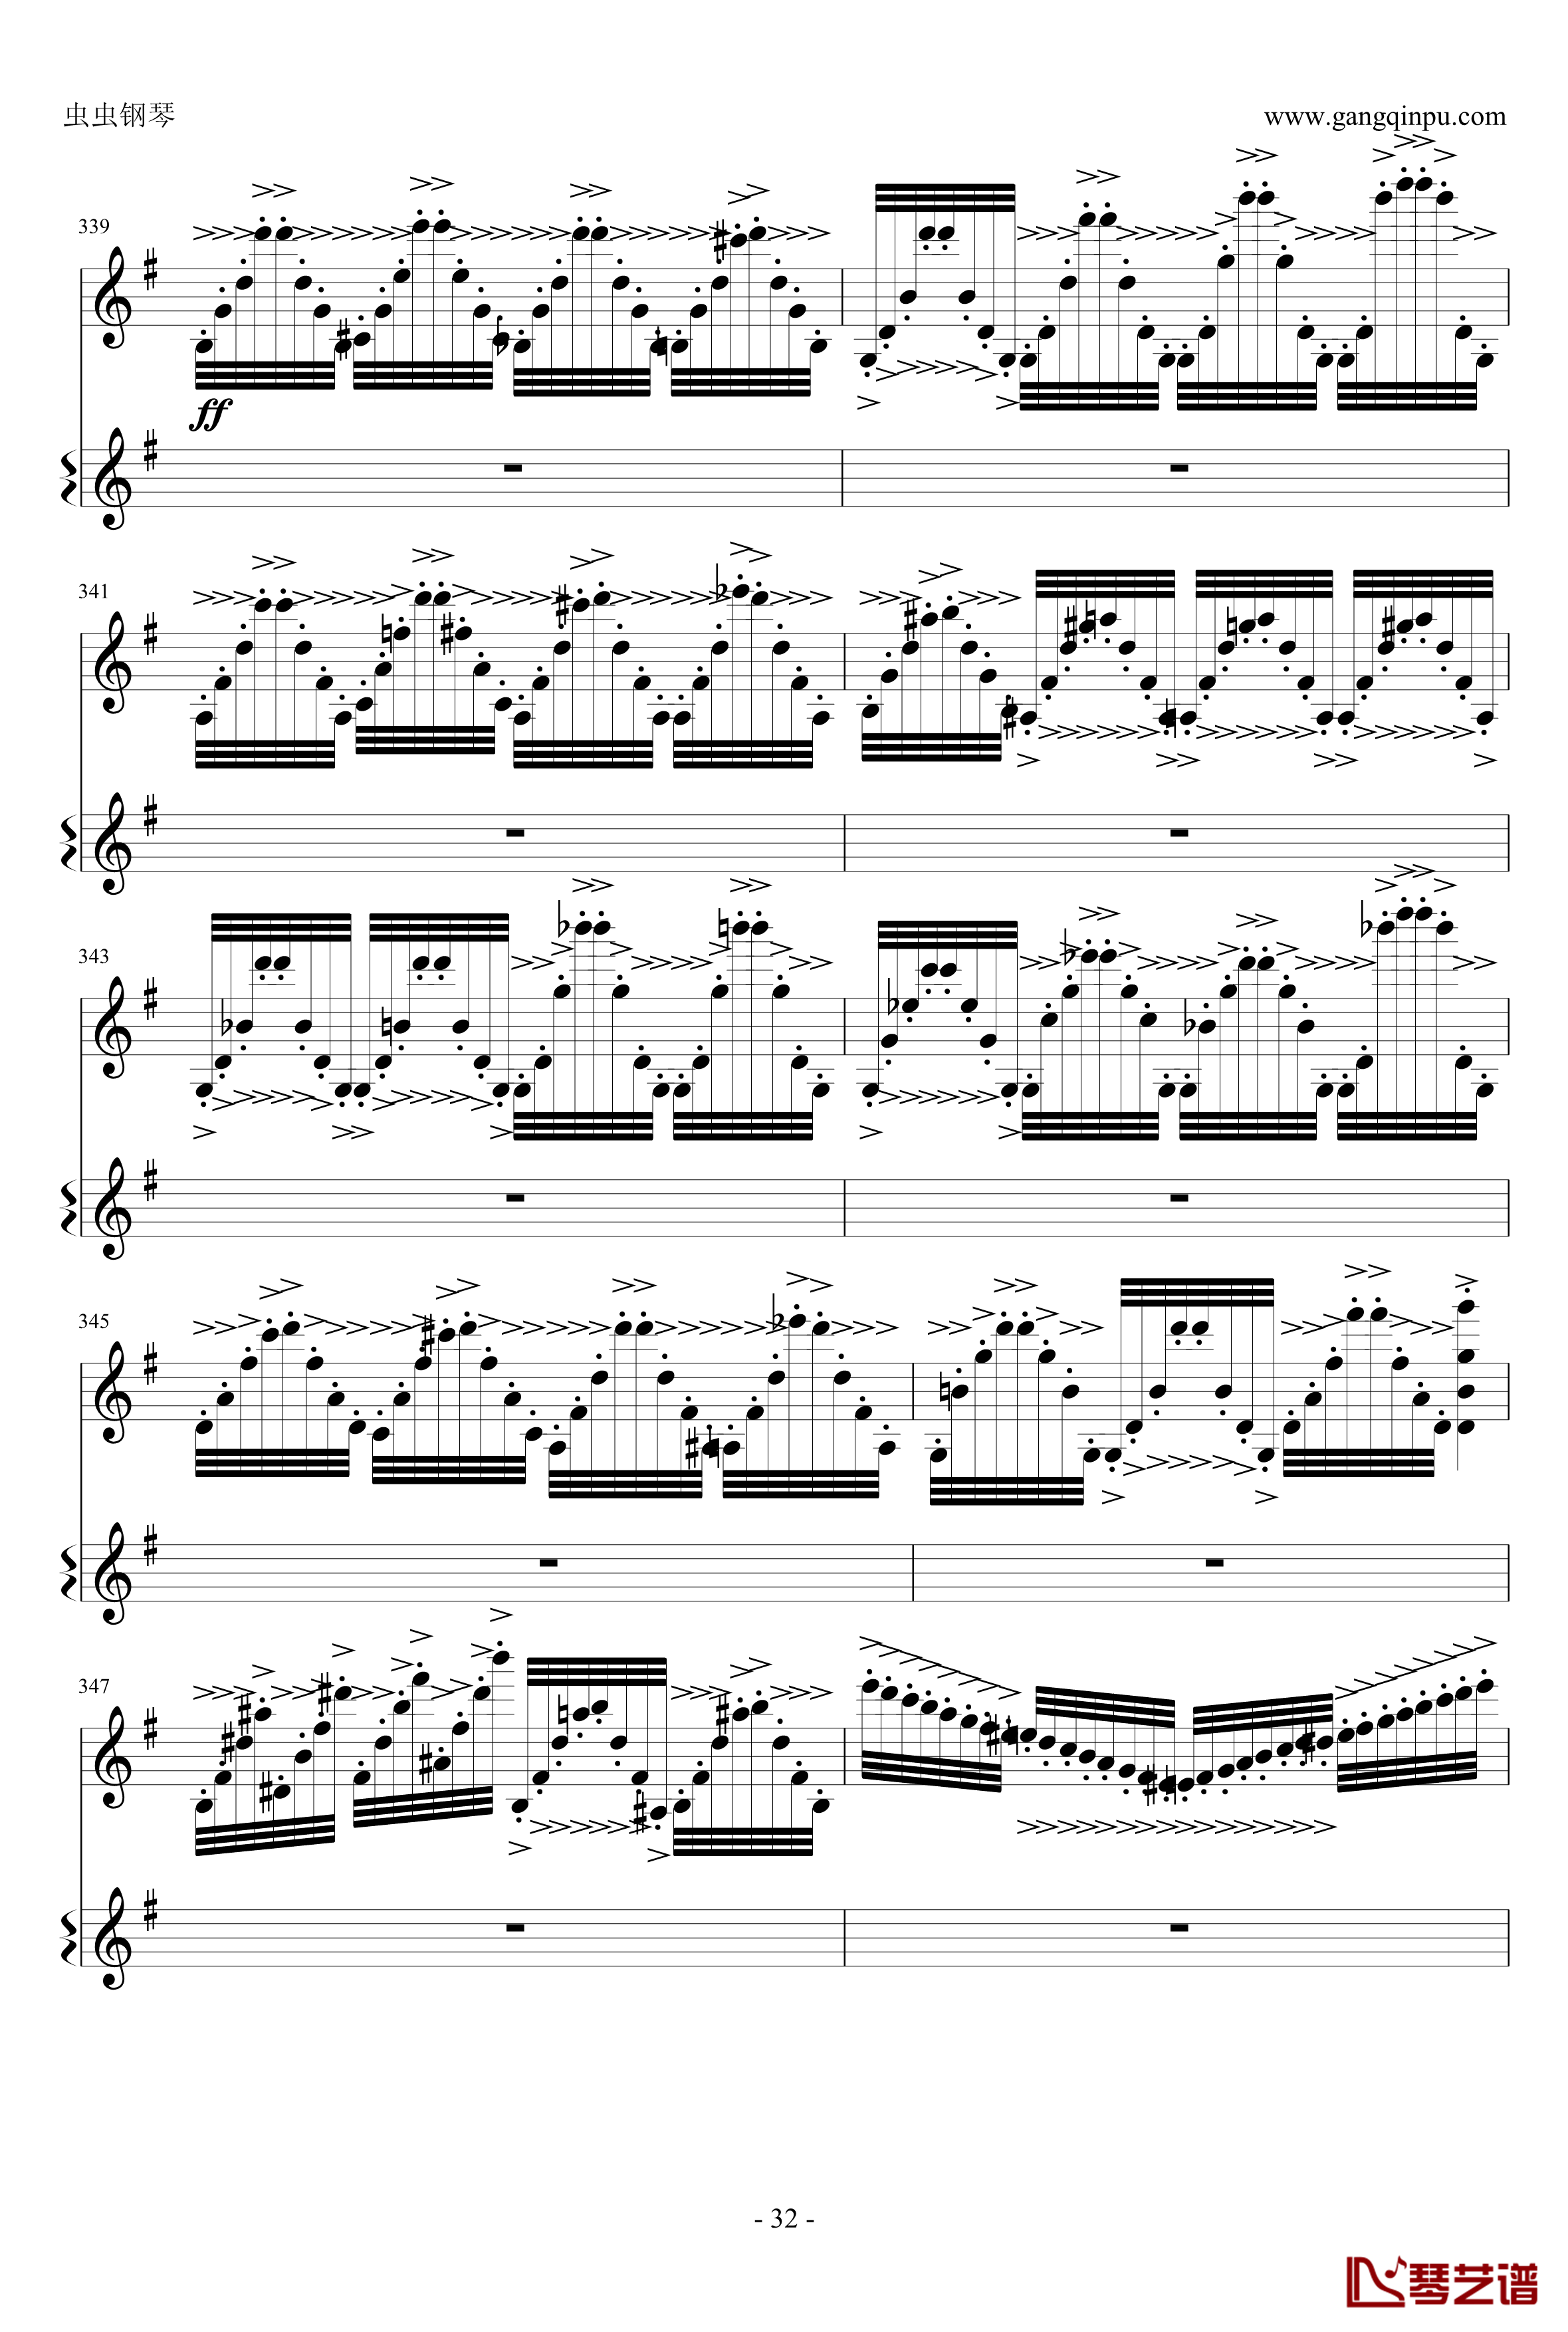 意大利国歌钢琴谱-变奏曲修改版-DXF32